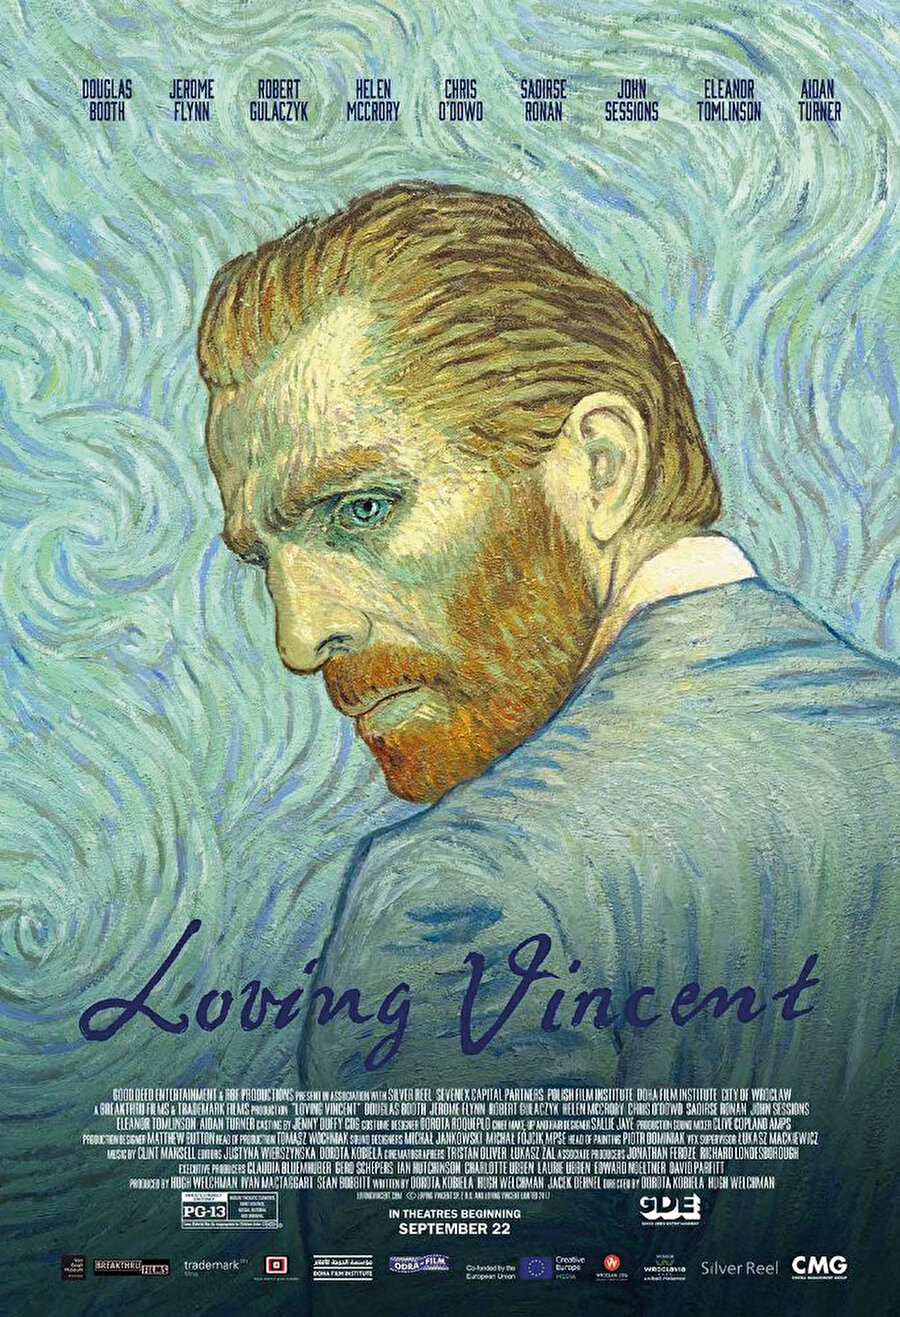 Vincent’ı Sevmek , “Ayçiçekleri”, “Yıldızlı Gece”, “Kafe Terasta Gece” gibi eserleriyle tanınan ressam Vincent van Gogh’un yaşamını konu alan film, sanatçının tablolarını animasyona dönüştürüyor. Van Gogh’un yüz yirmiden fazla tablosundan oluşan Vincent’ı Sevmek, olay örgüsünü ise ressamın yazdığı sekiz yüz mektup üzerine kuruyor. (Vizyon tarihi: 29 Aralık 2017)